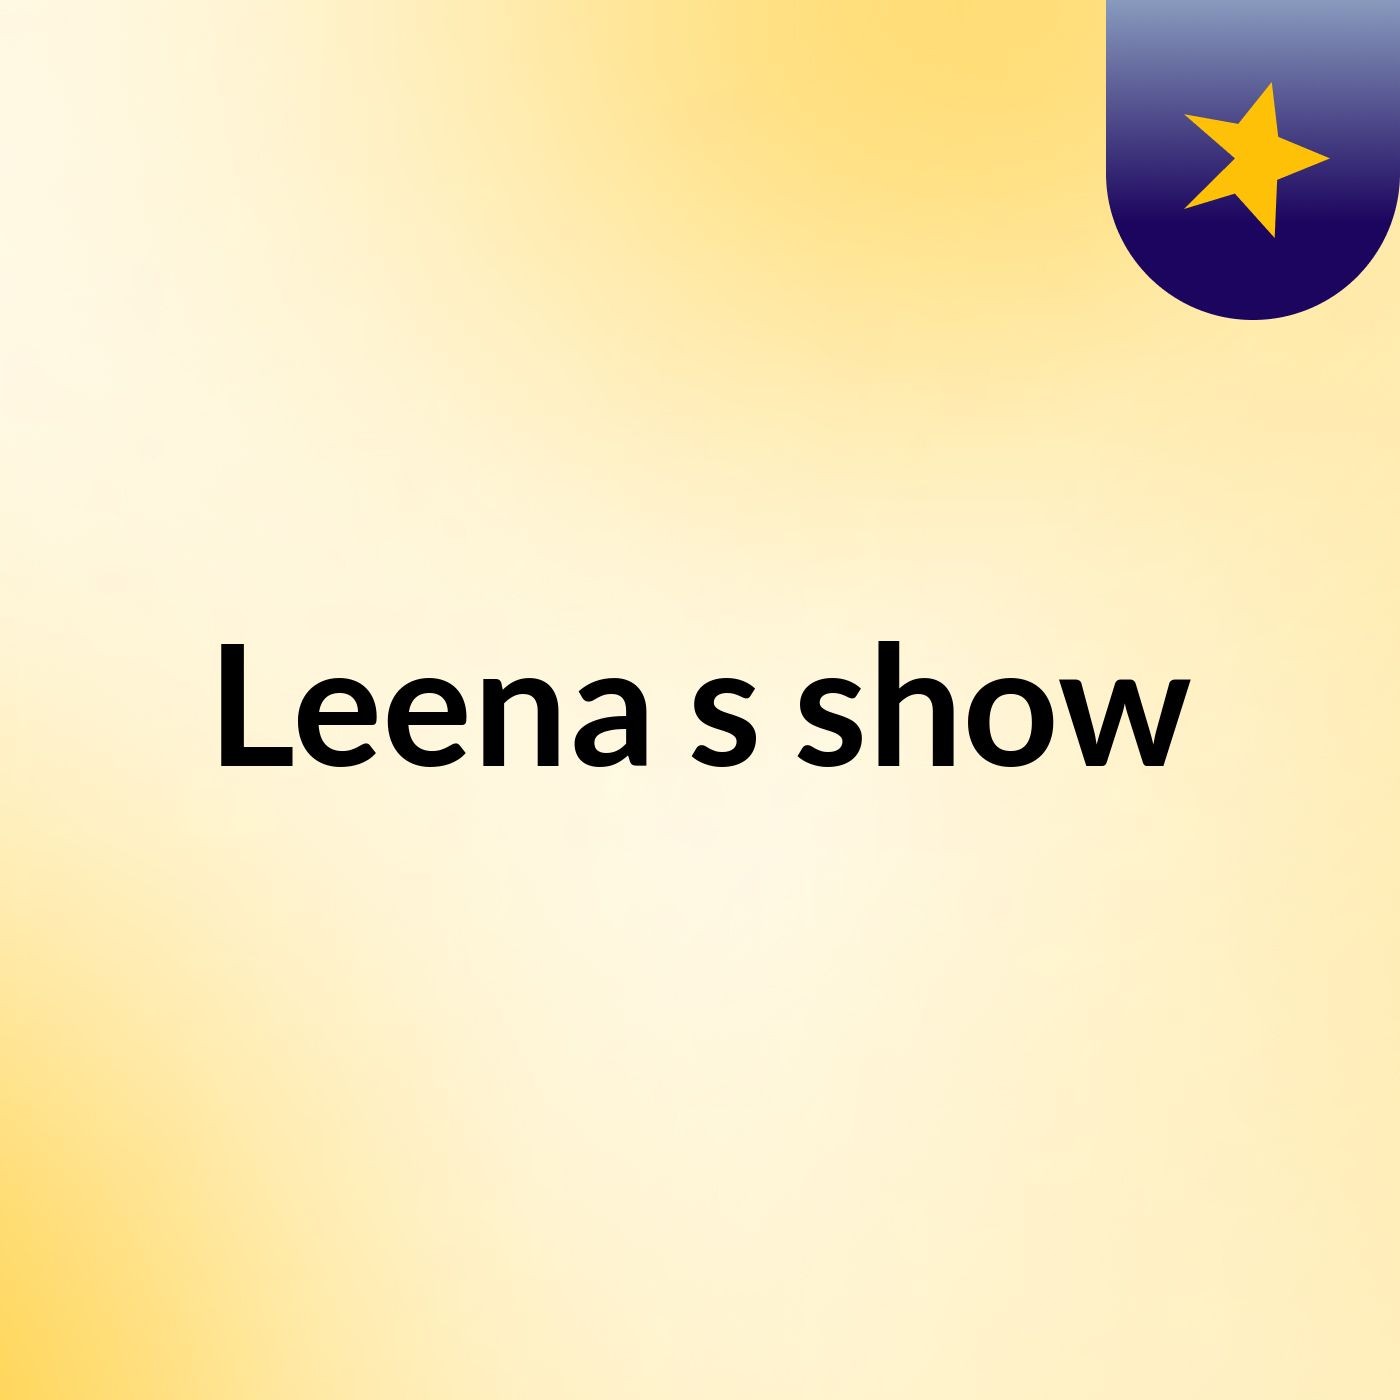 Leena's show